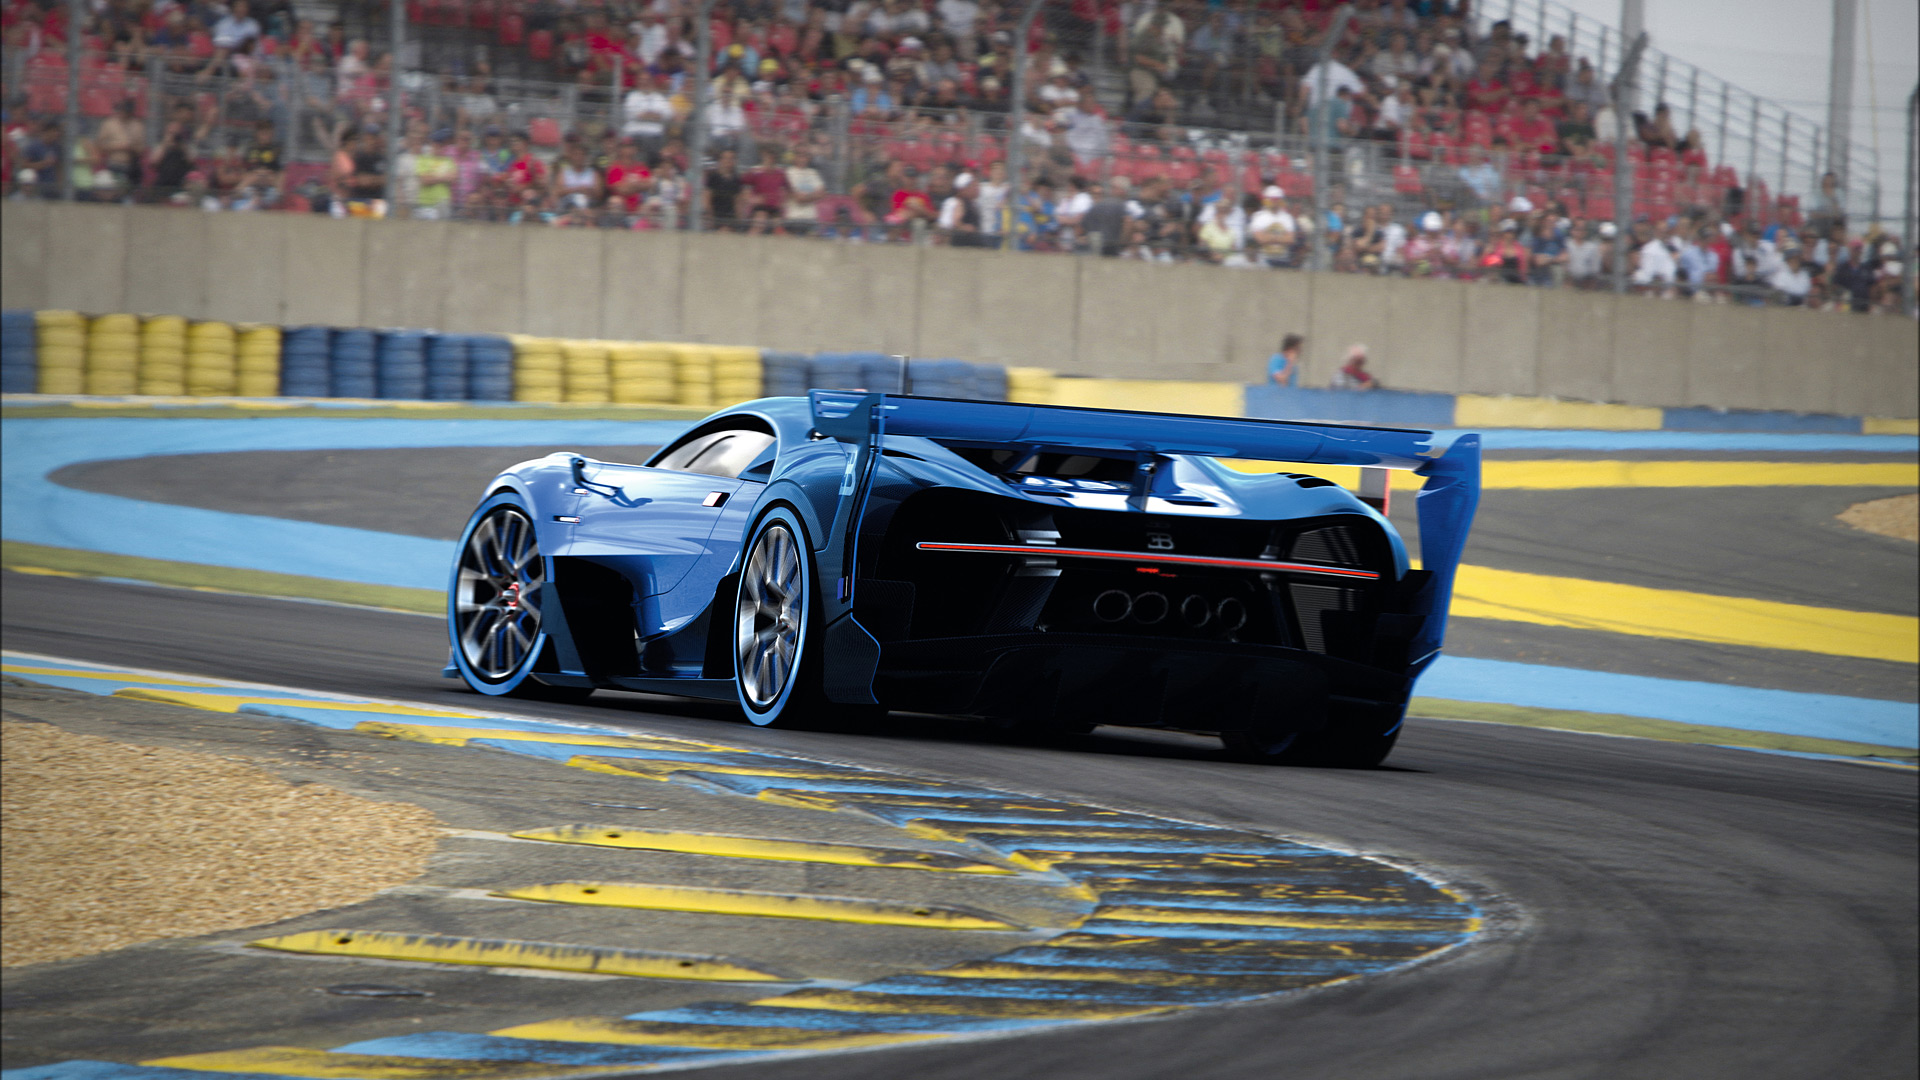  2015 Bugatti Vision Gran Turismo Concept Wallpaper.